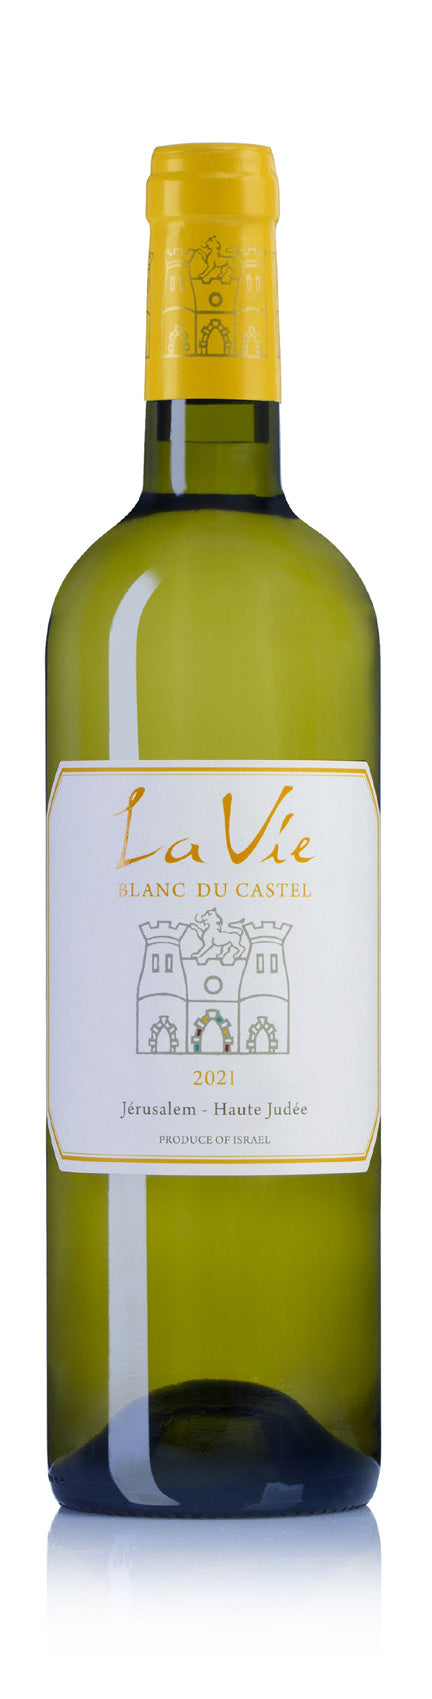 Domaine du Castel - La Vie Blanc Du Castel 2021